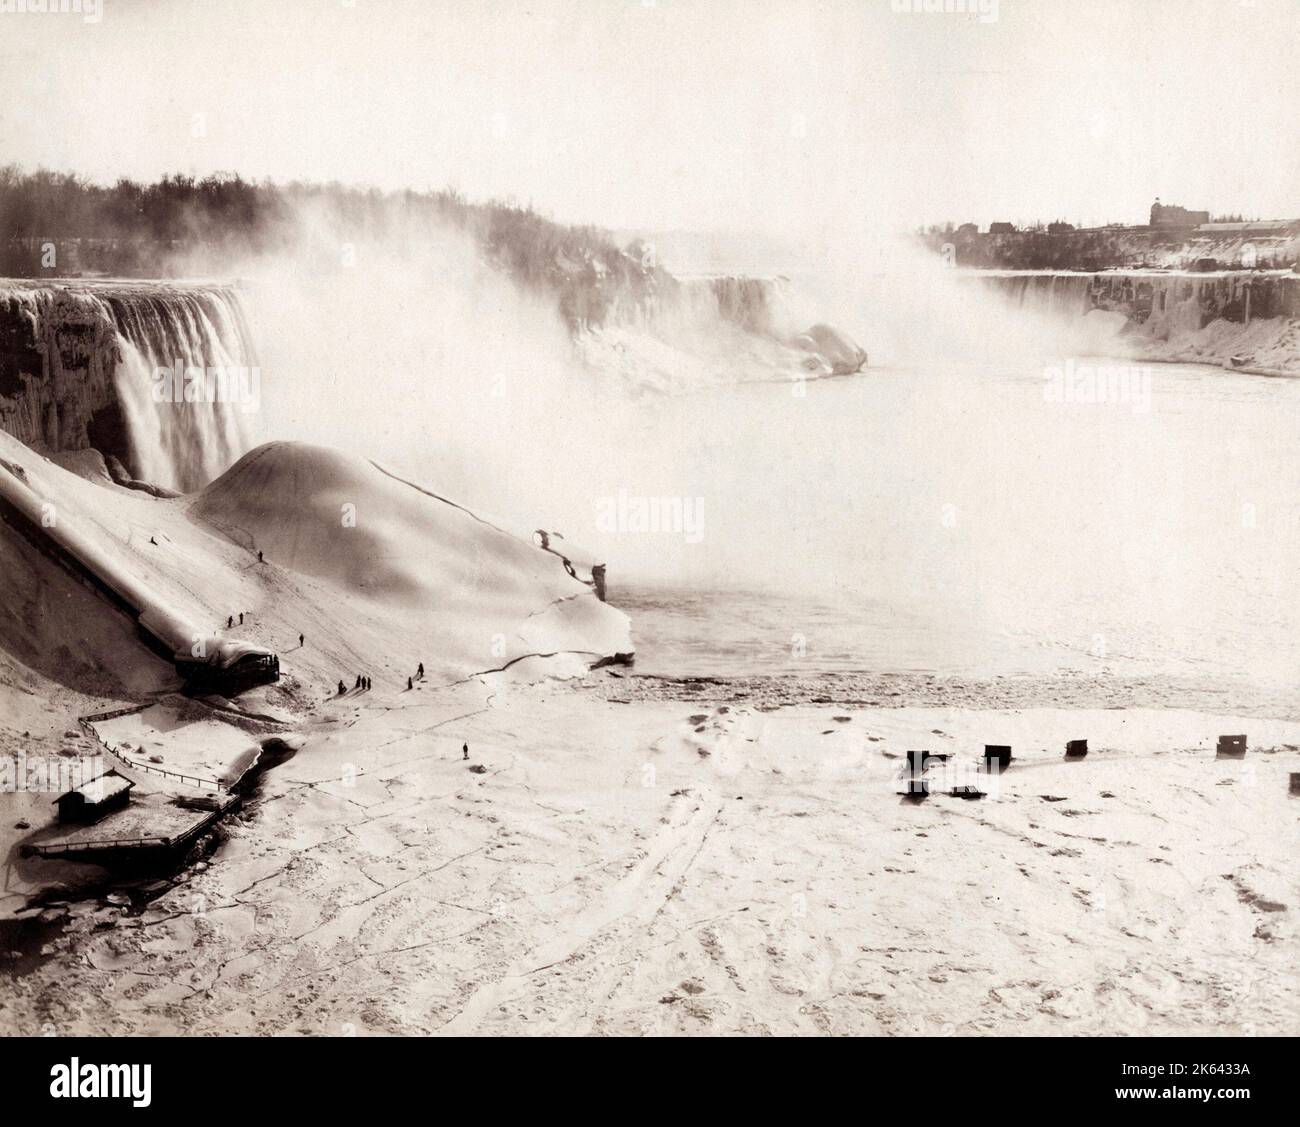 19th century vintage photograph: Niagara Falls frozen in Winter, USA, Canada border. Stock Photo